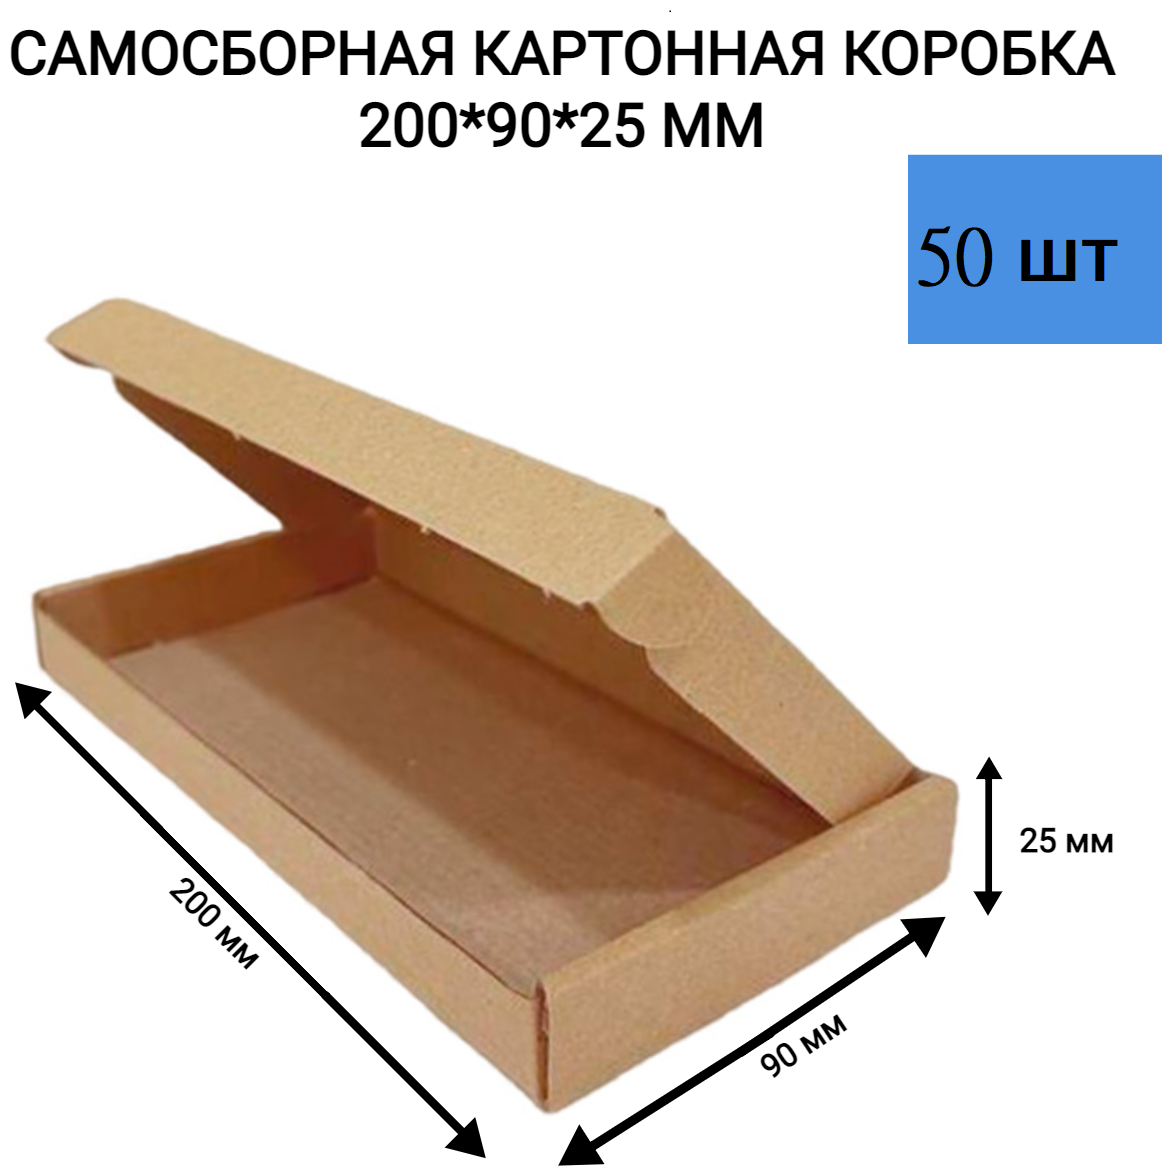 Самосборная картонная коробка 200*90*25 мм. 50 шт